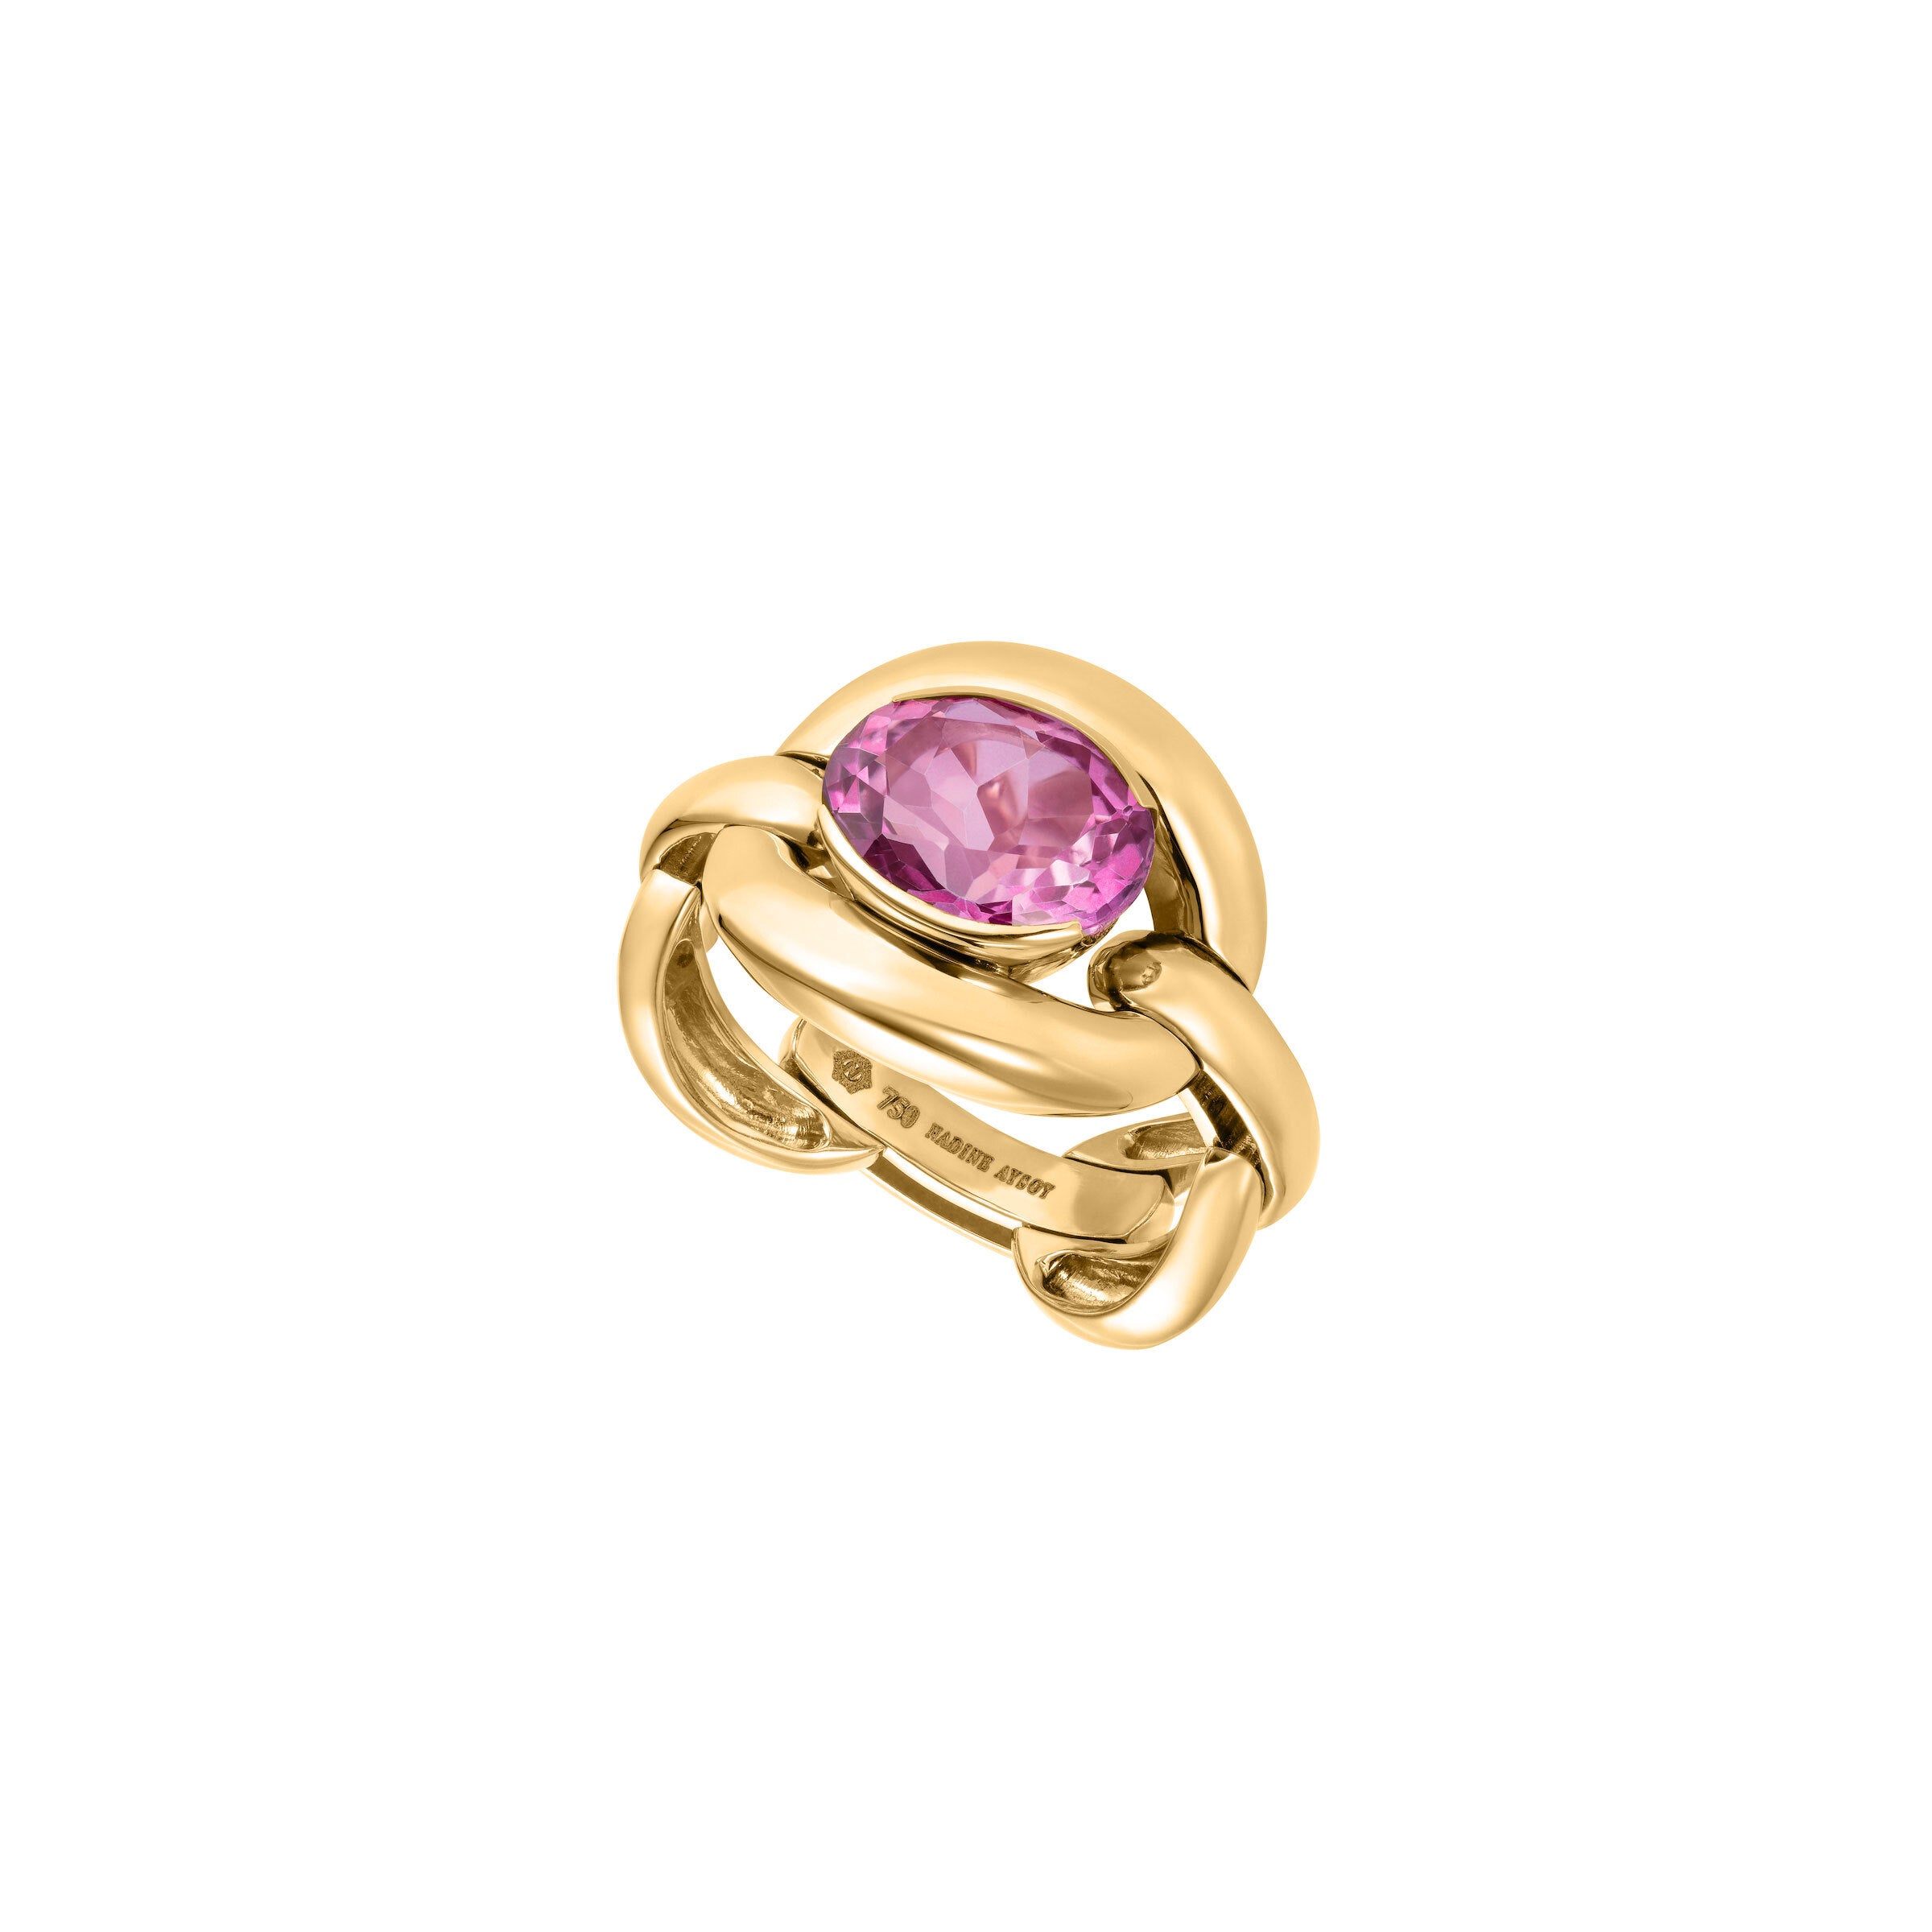 Scosha | The Rolinda Ring with Pink Topaz